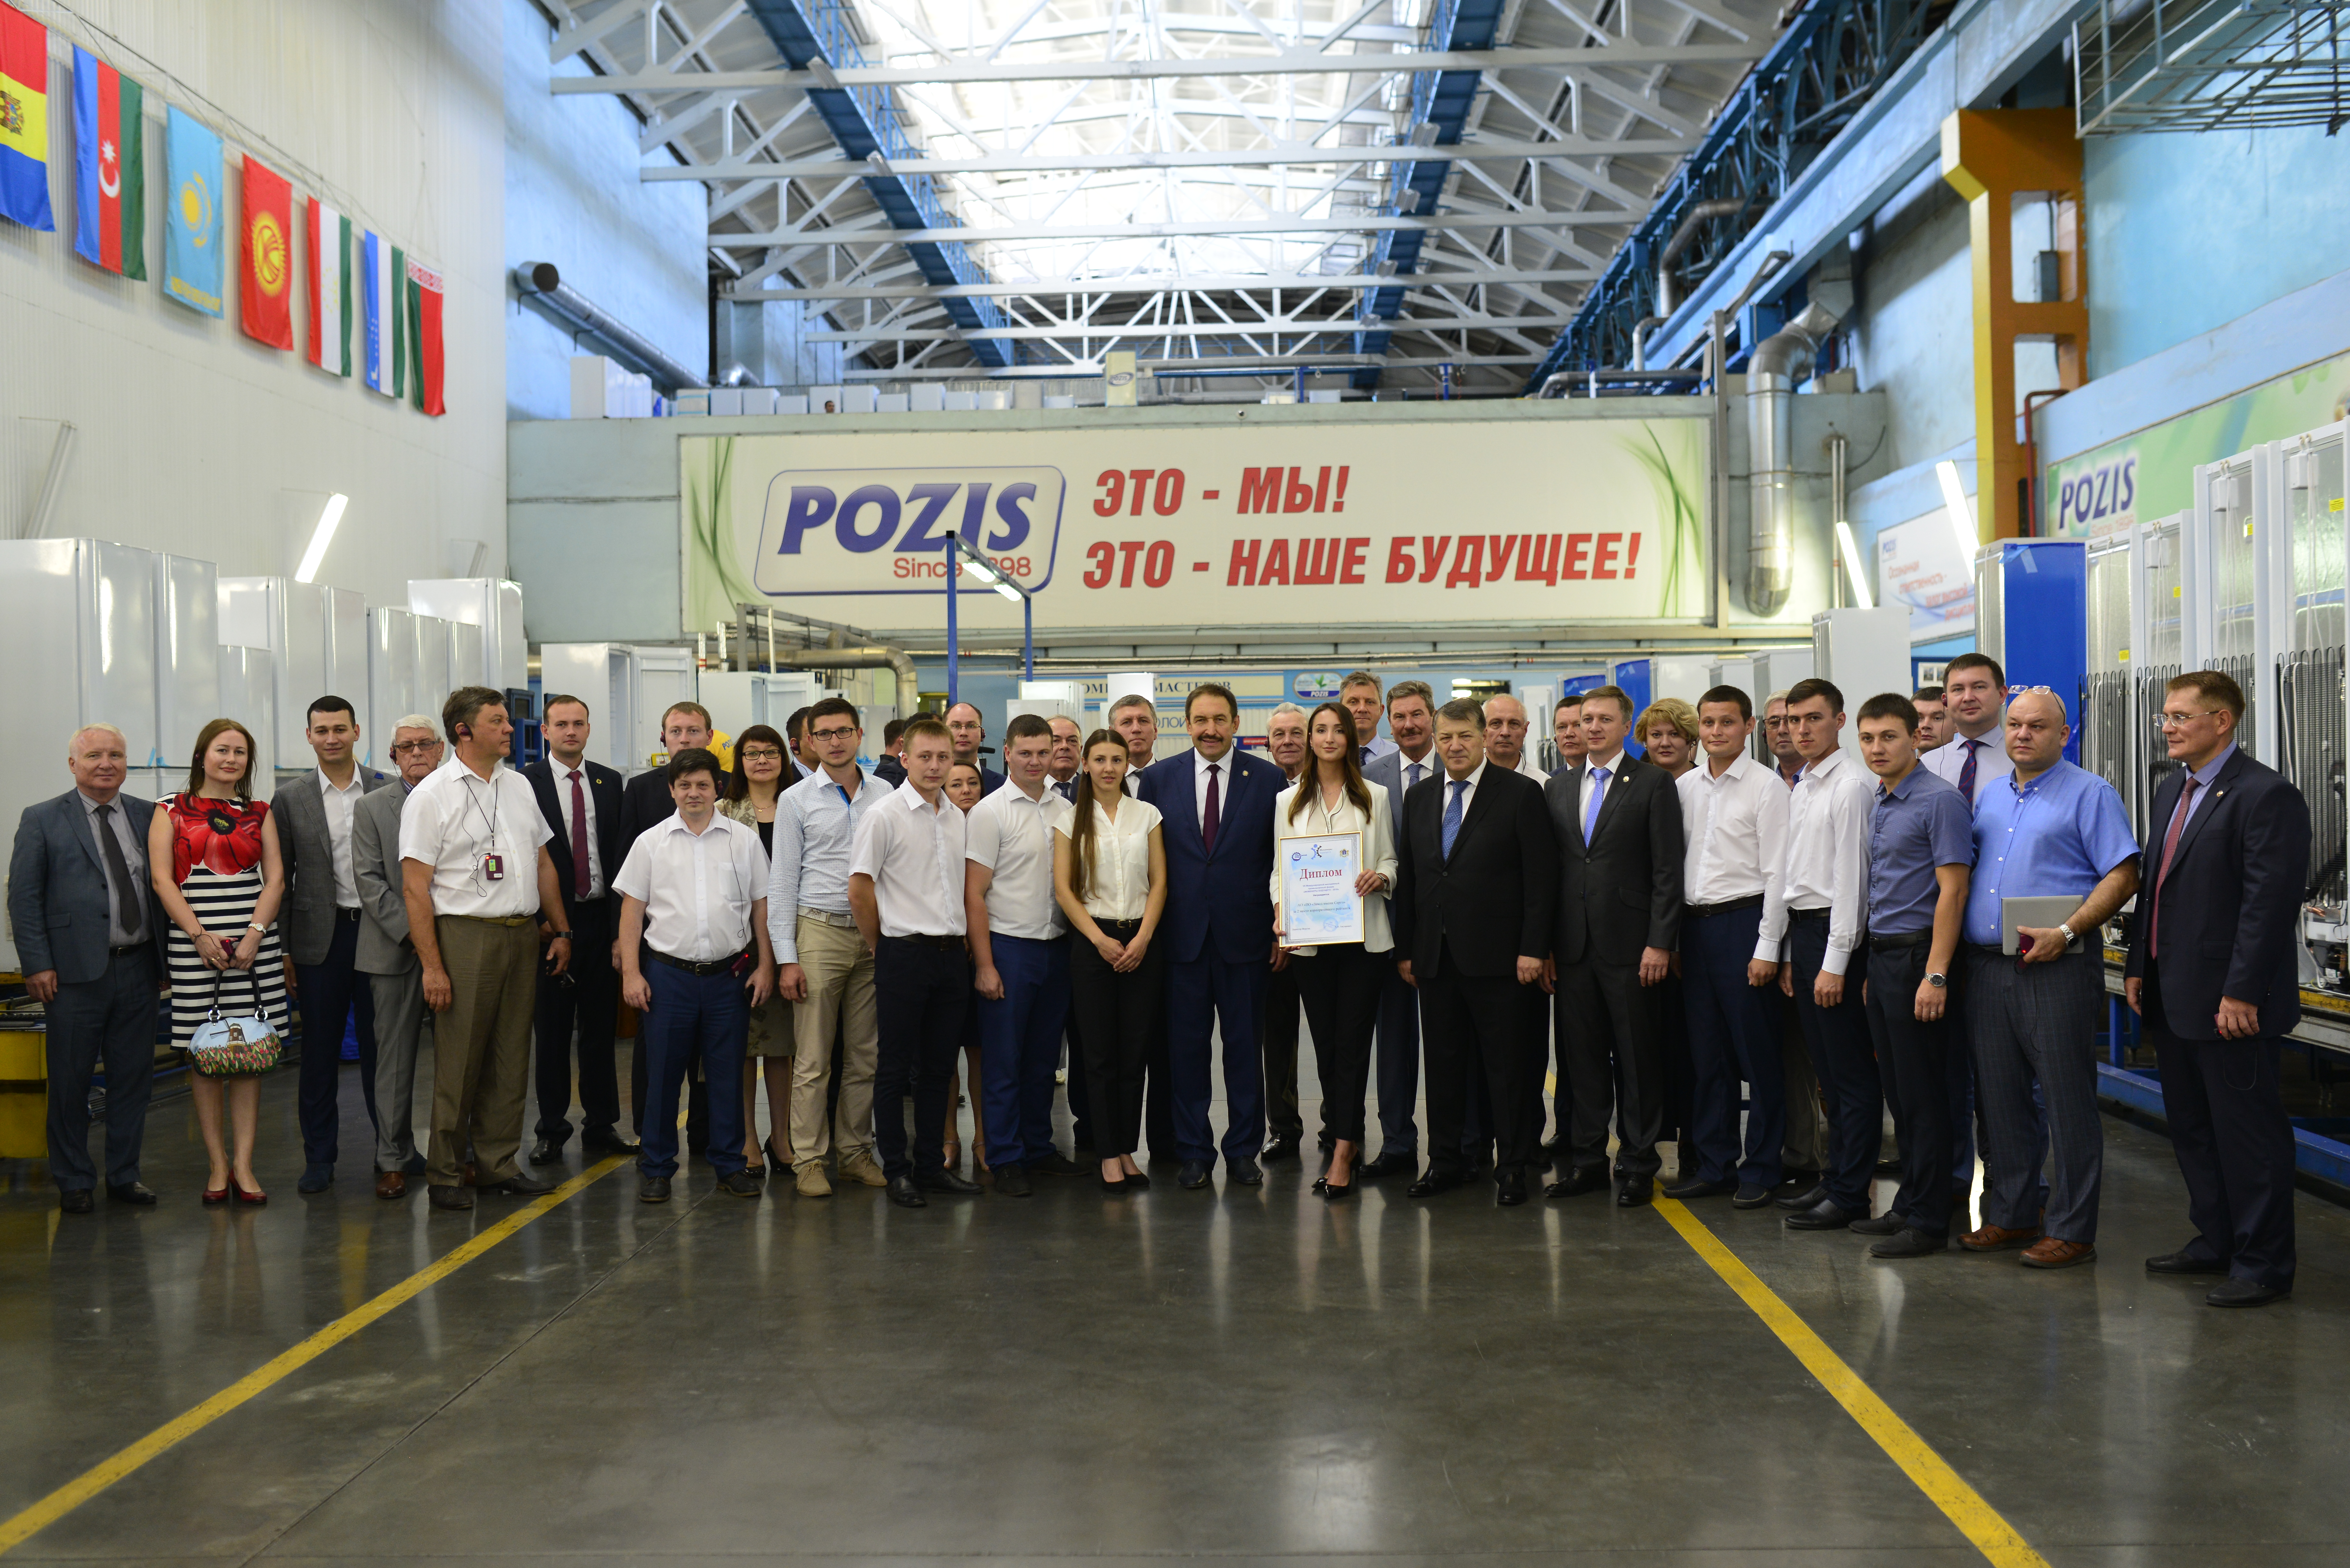 POZIS сэкономил 150 млн рублей за счет развития производственной системы